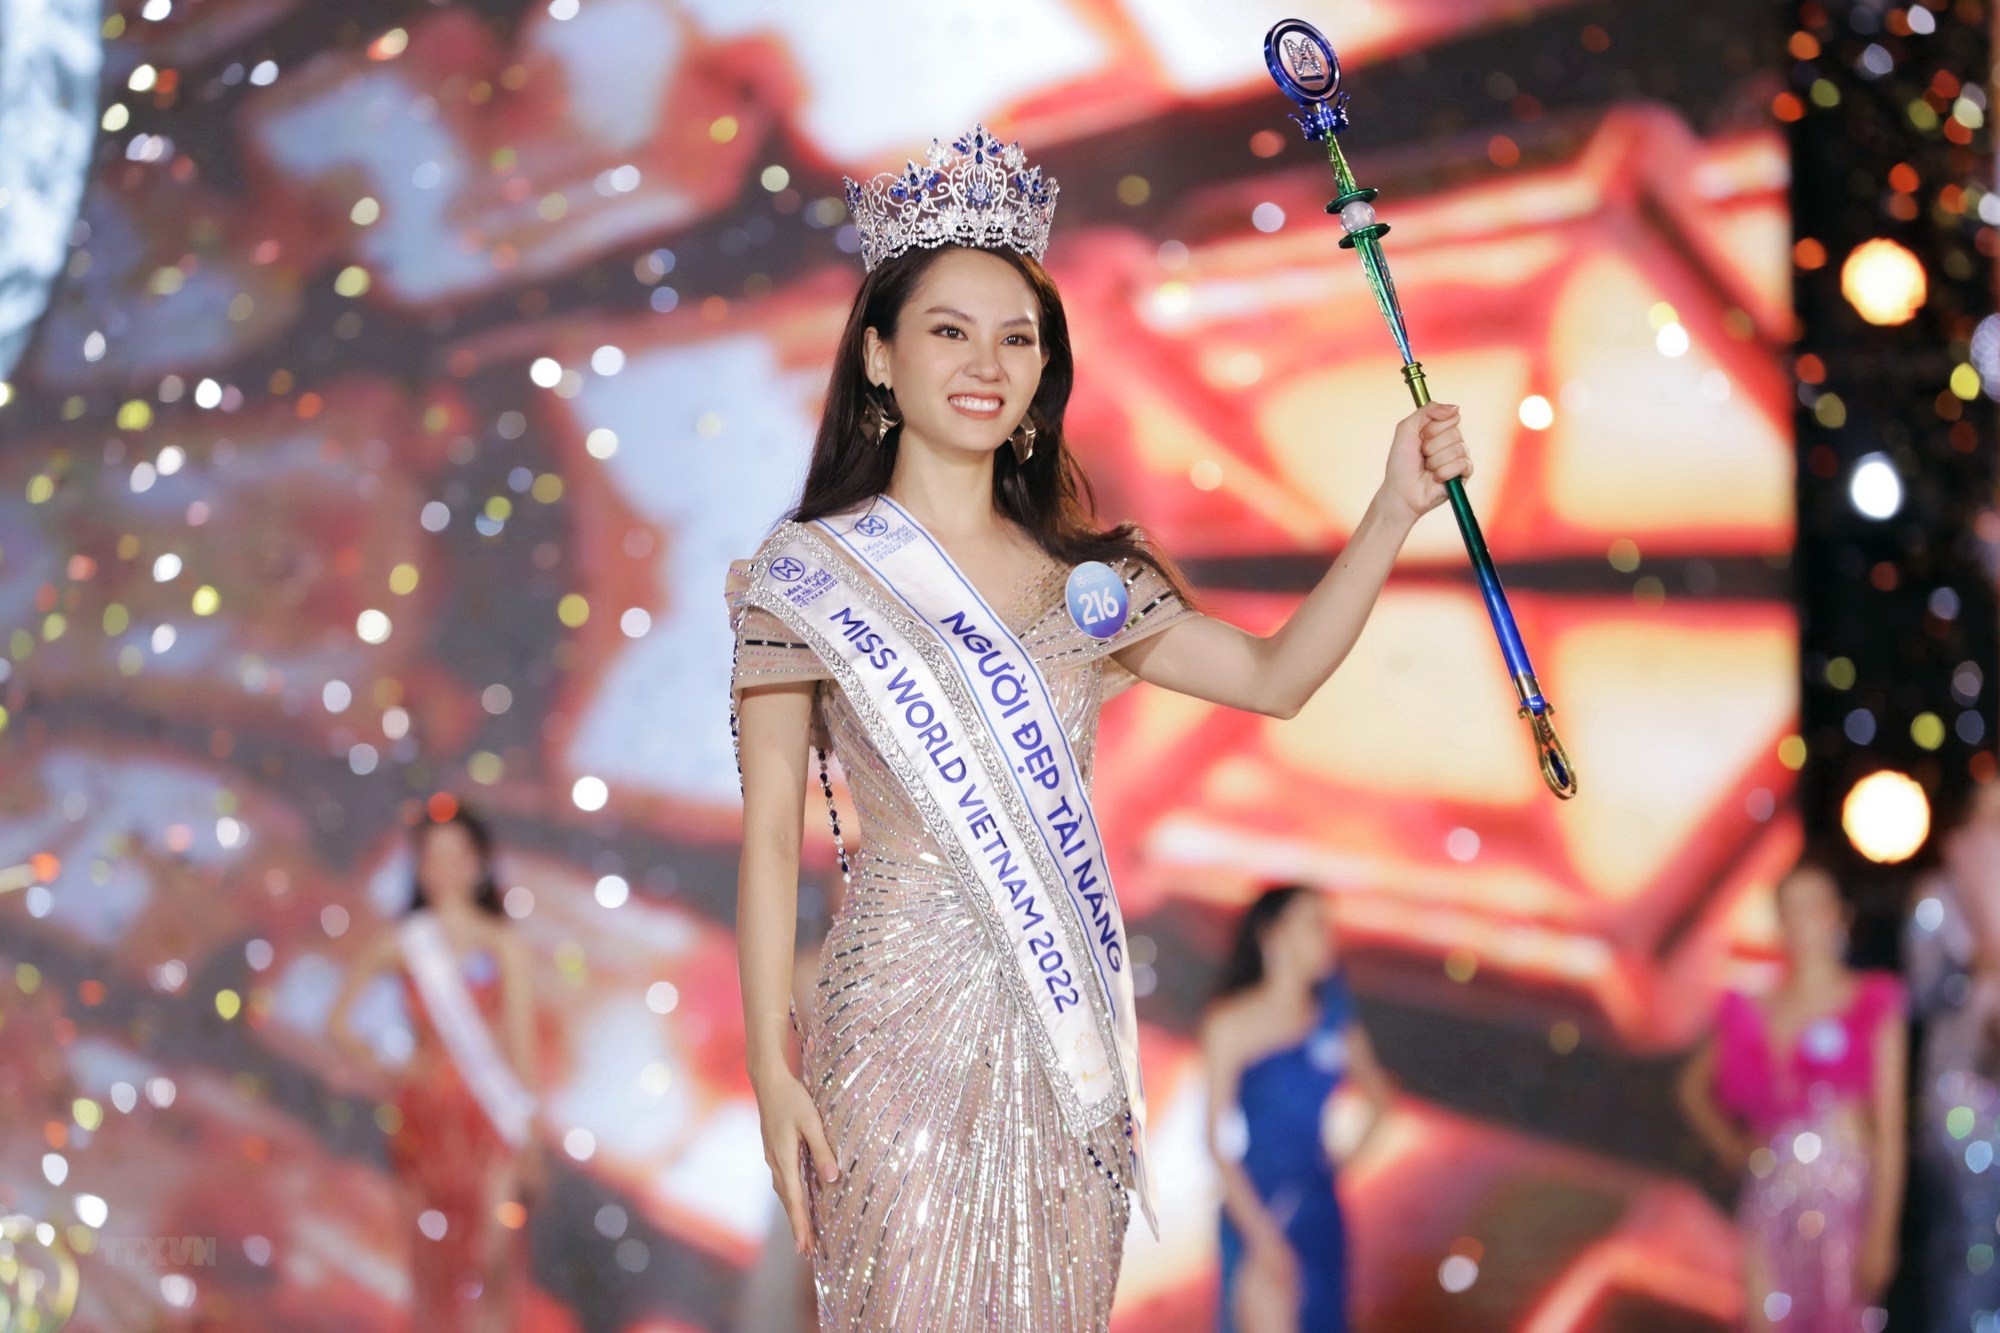 Hoa hậu Mai Phương lên tiếng khi bị chỉ trích vui quá đà làm mất hình ảnh: 'Nhún nhảy, bung xõa không có nghĩa tôi là xấu' - Ảnh 3.